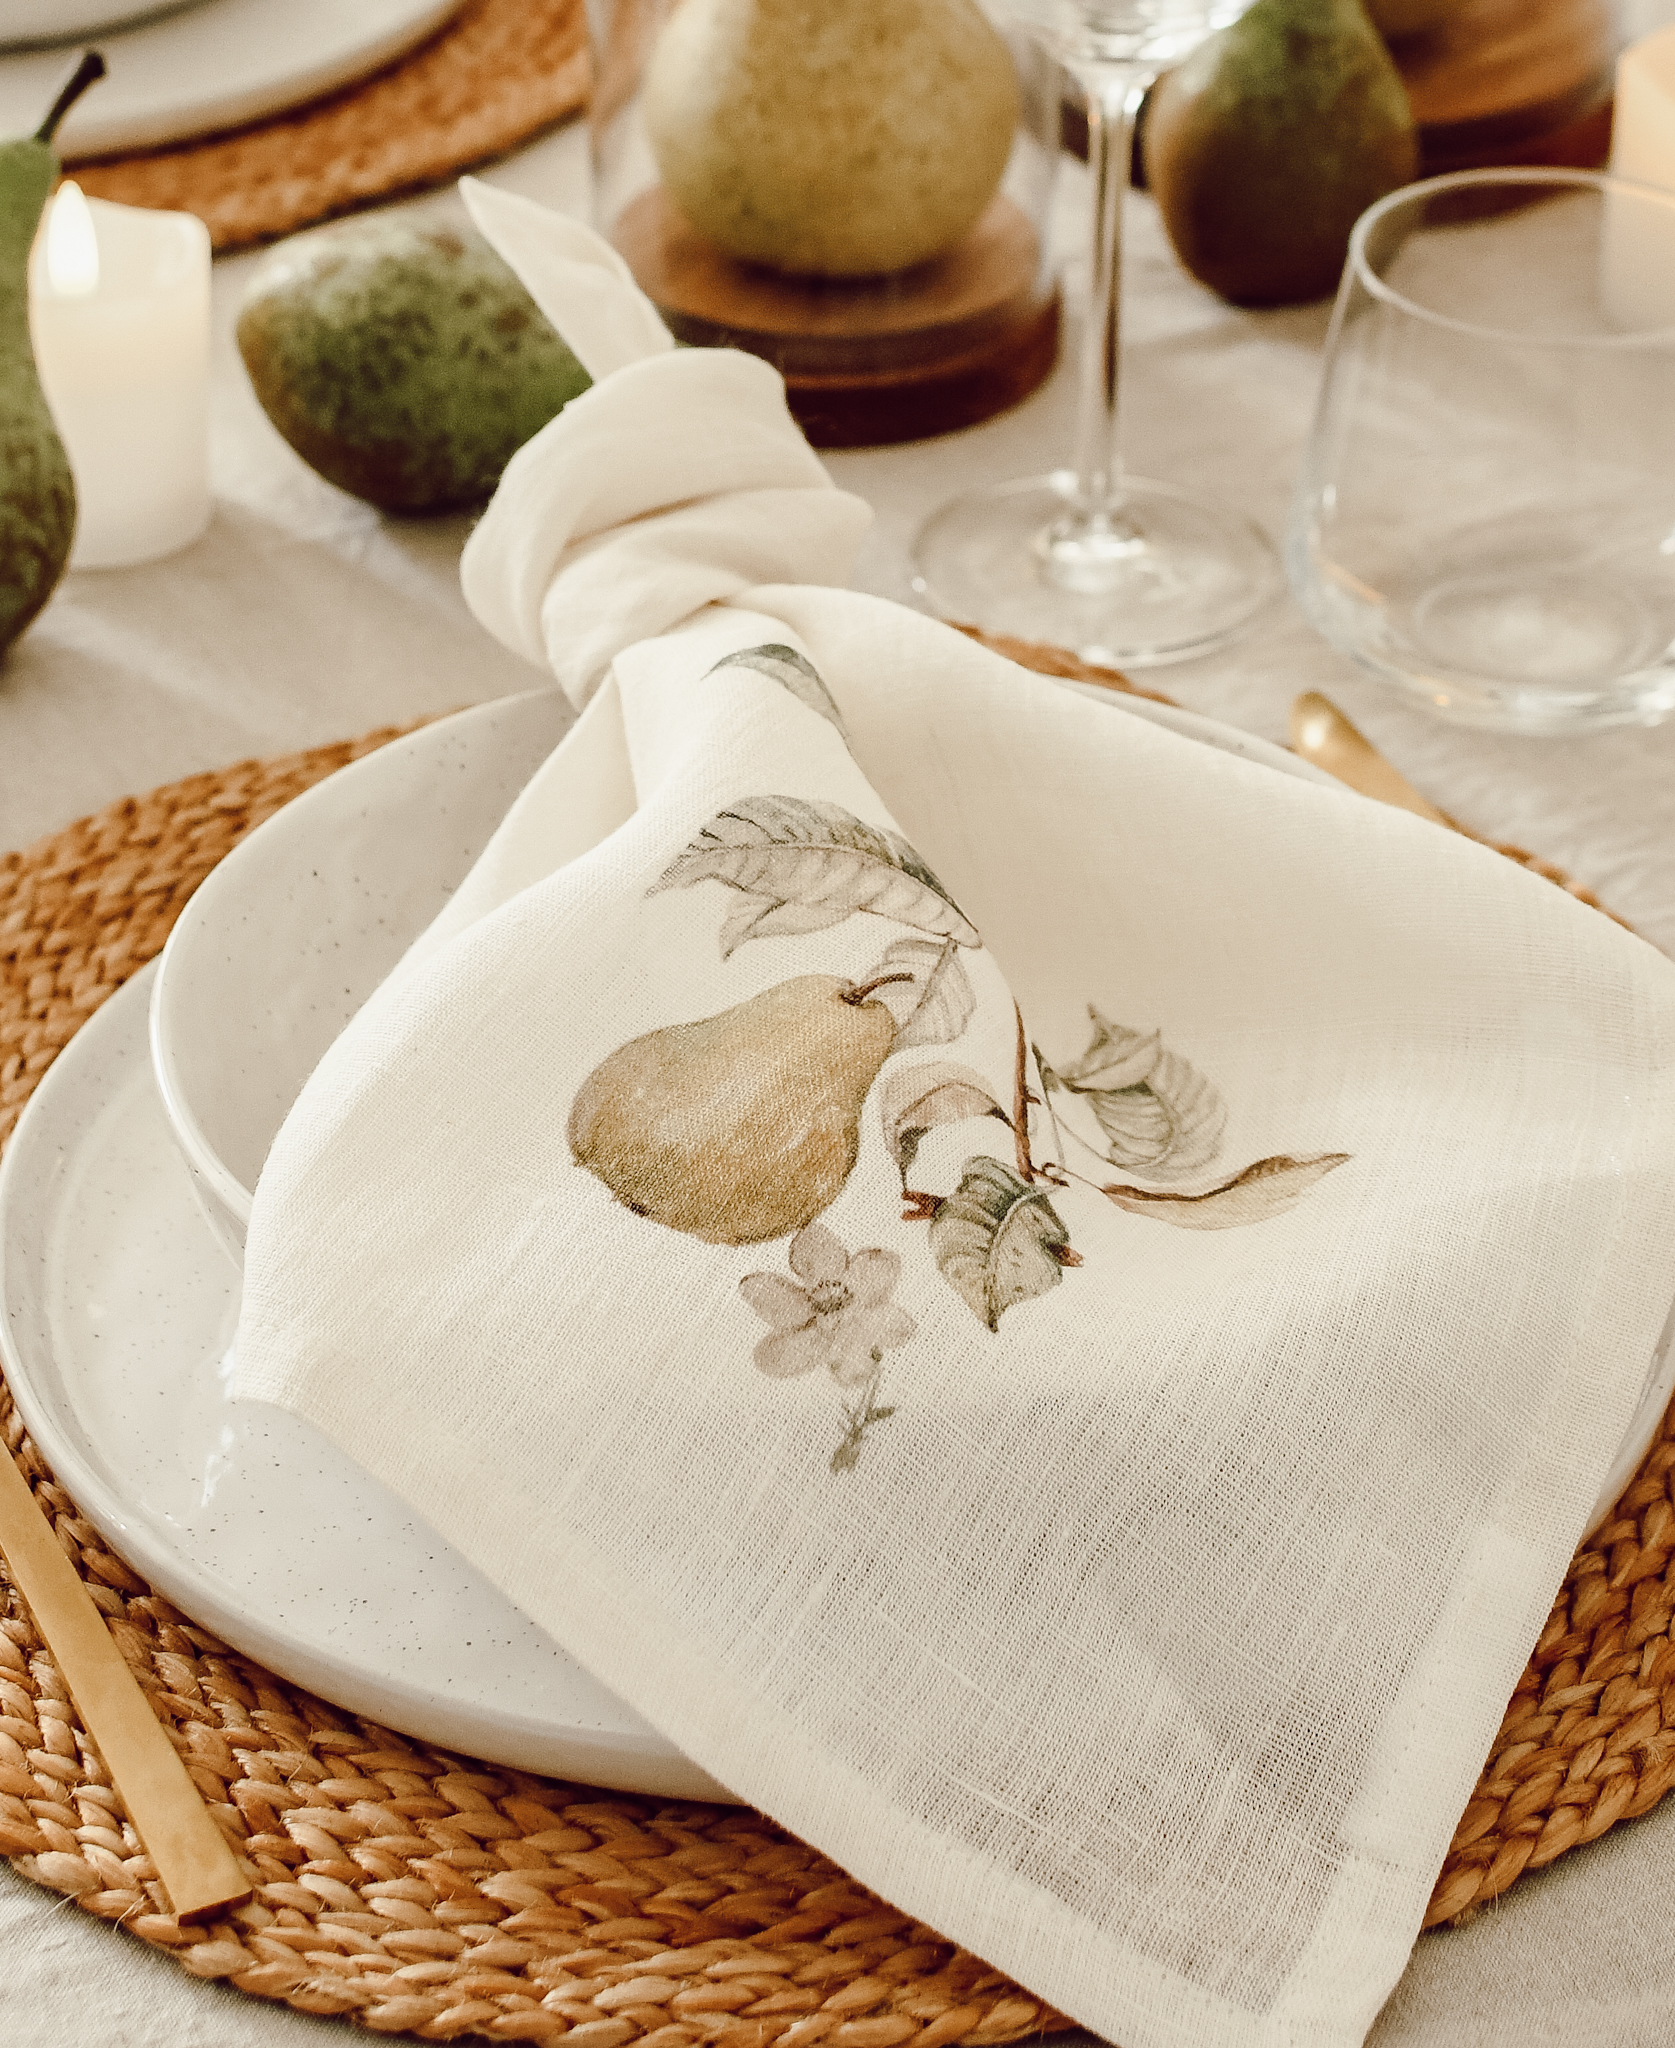 Servet met peren erop op een gedekte tafel - herfstdecoratie